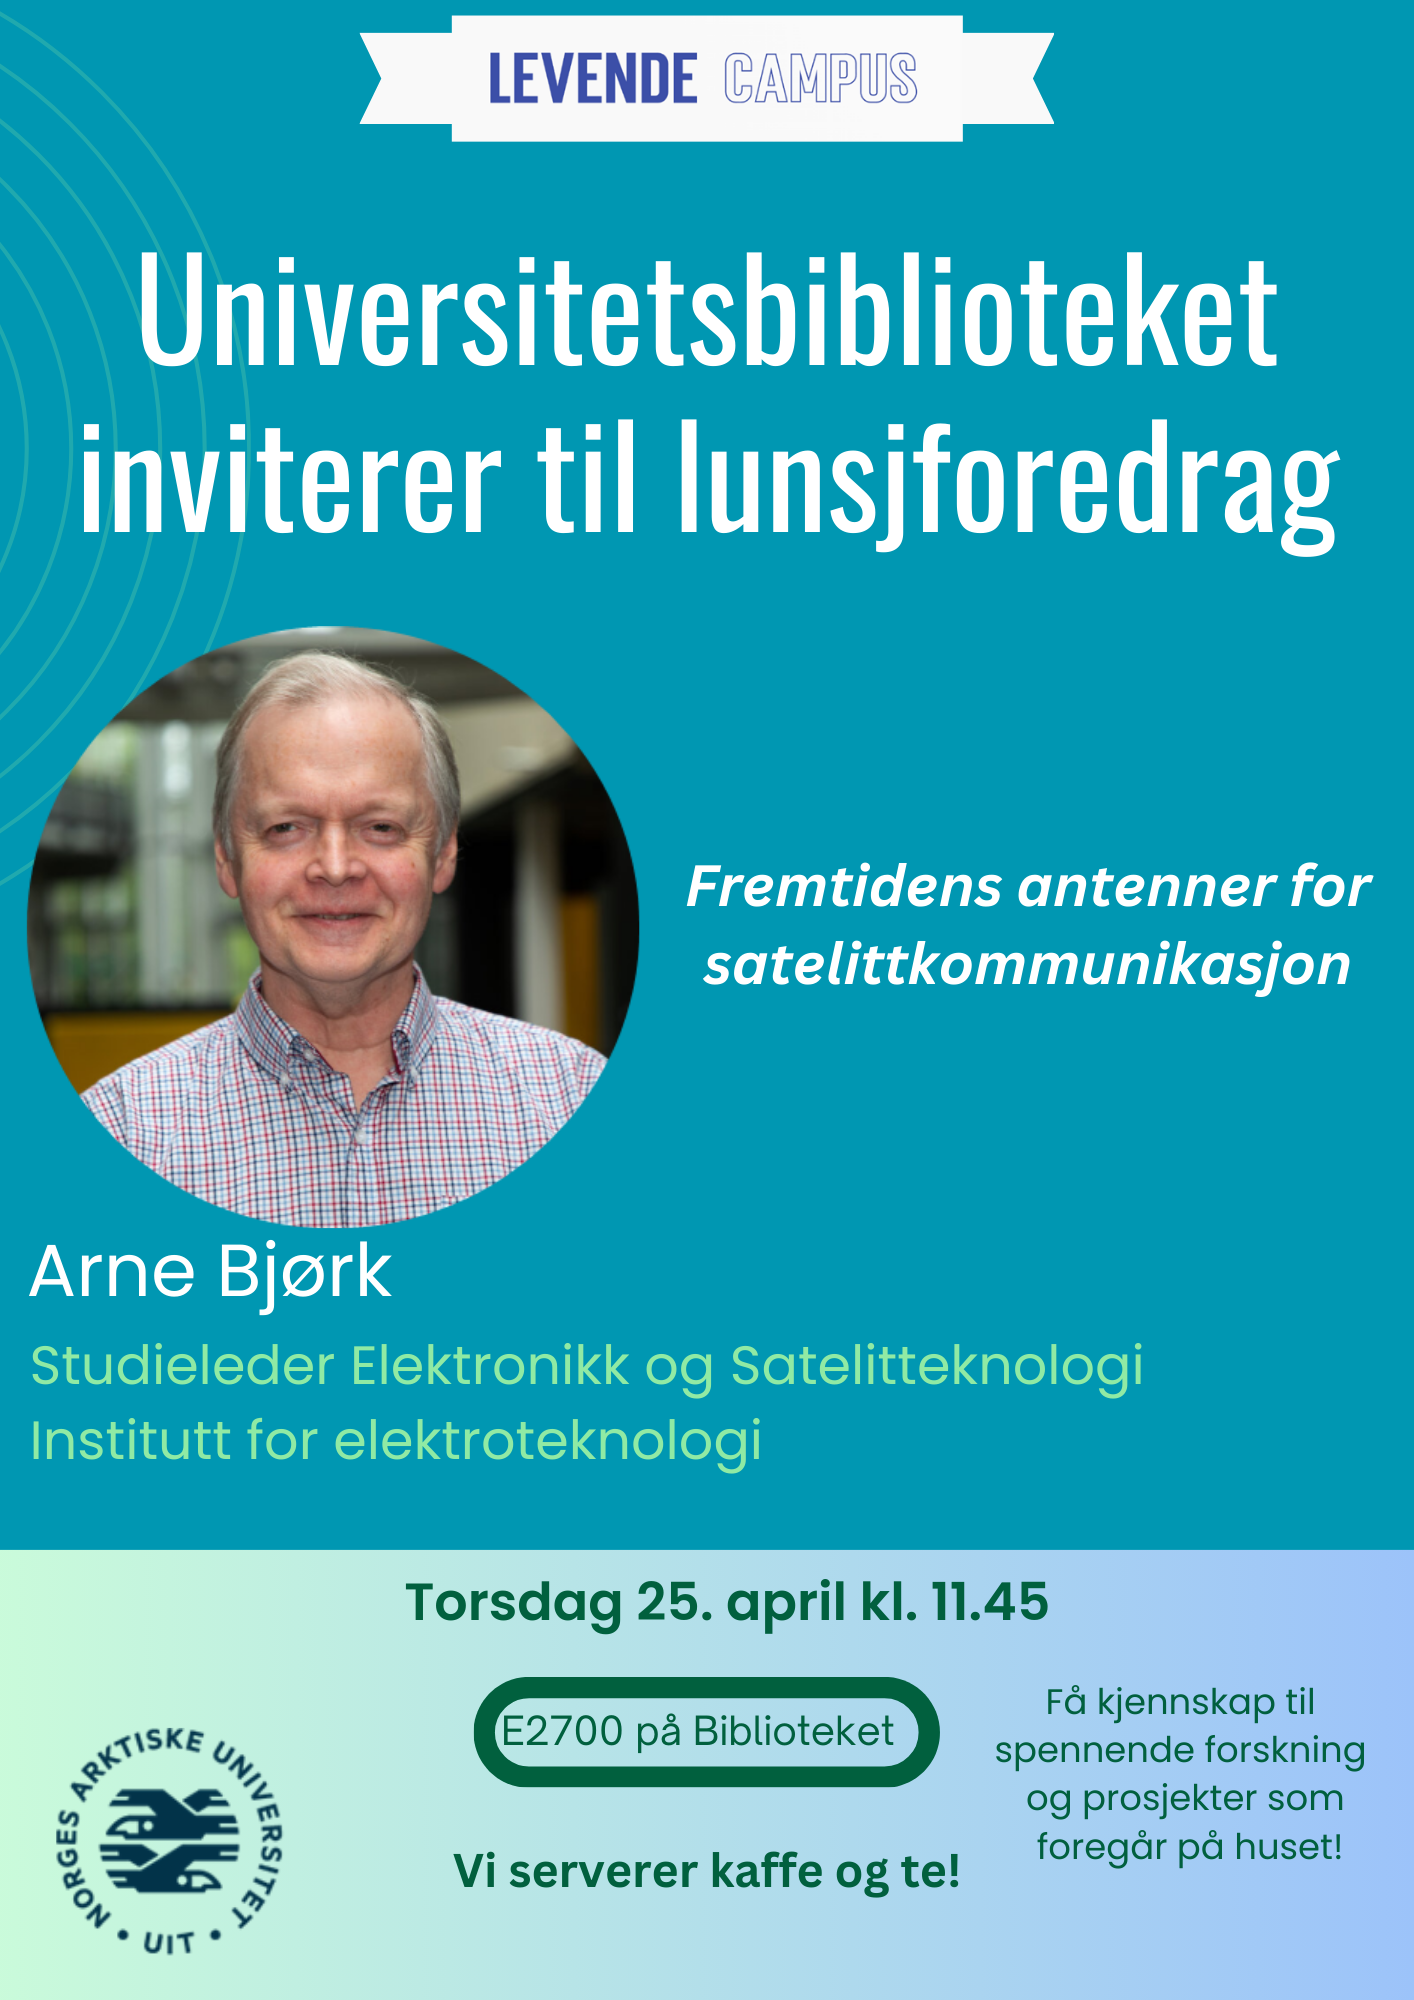 Illustrasjons-/bannerbilde for Lunsjforedrag med Arne Bjørk 